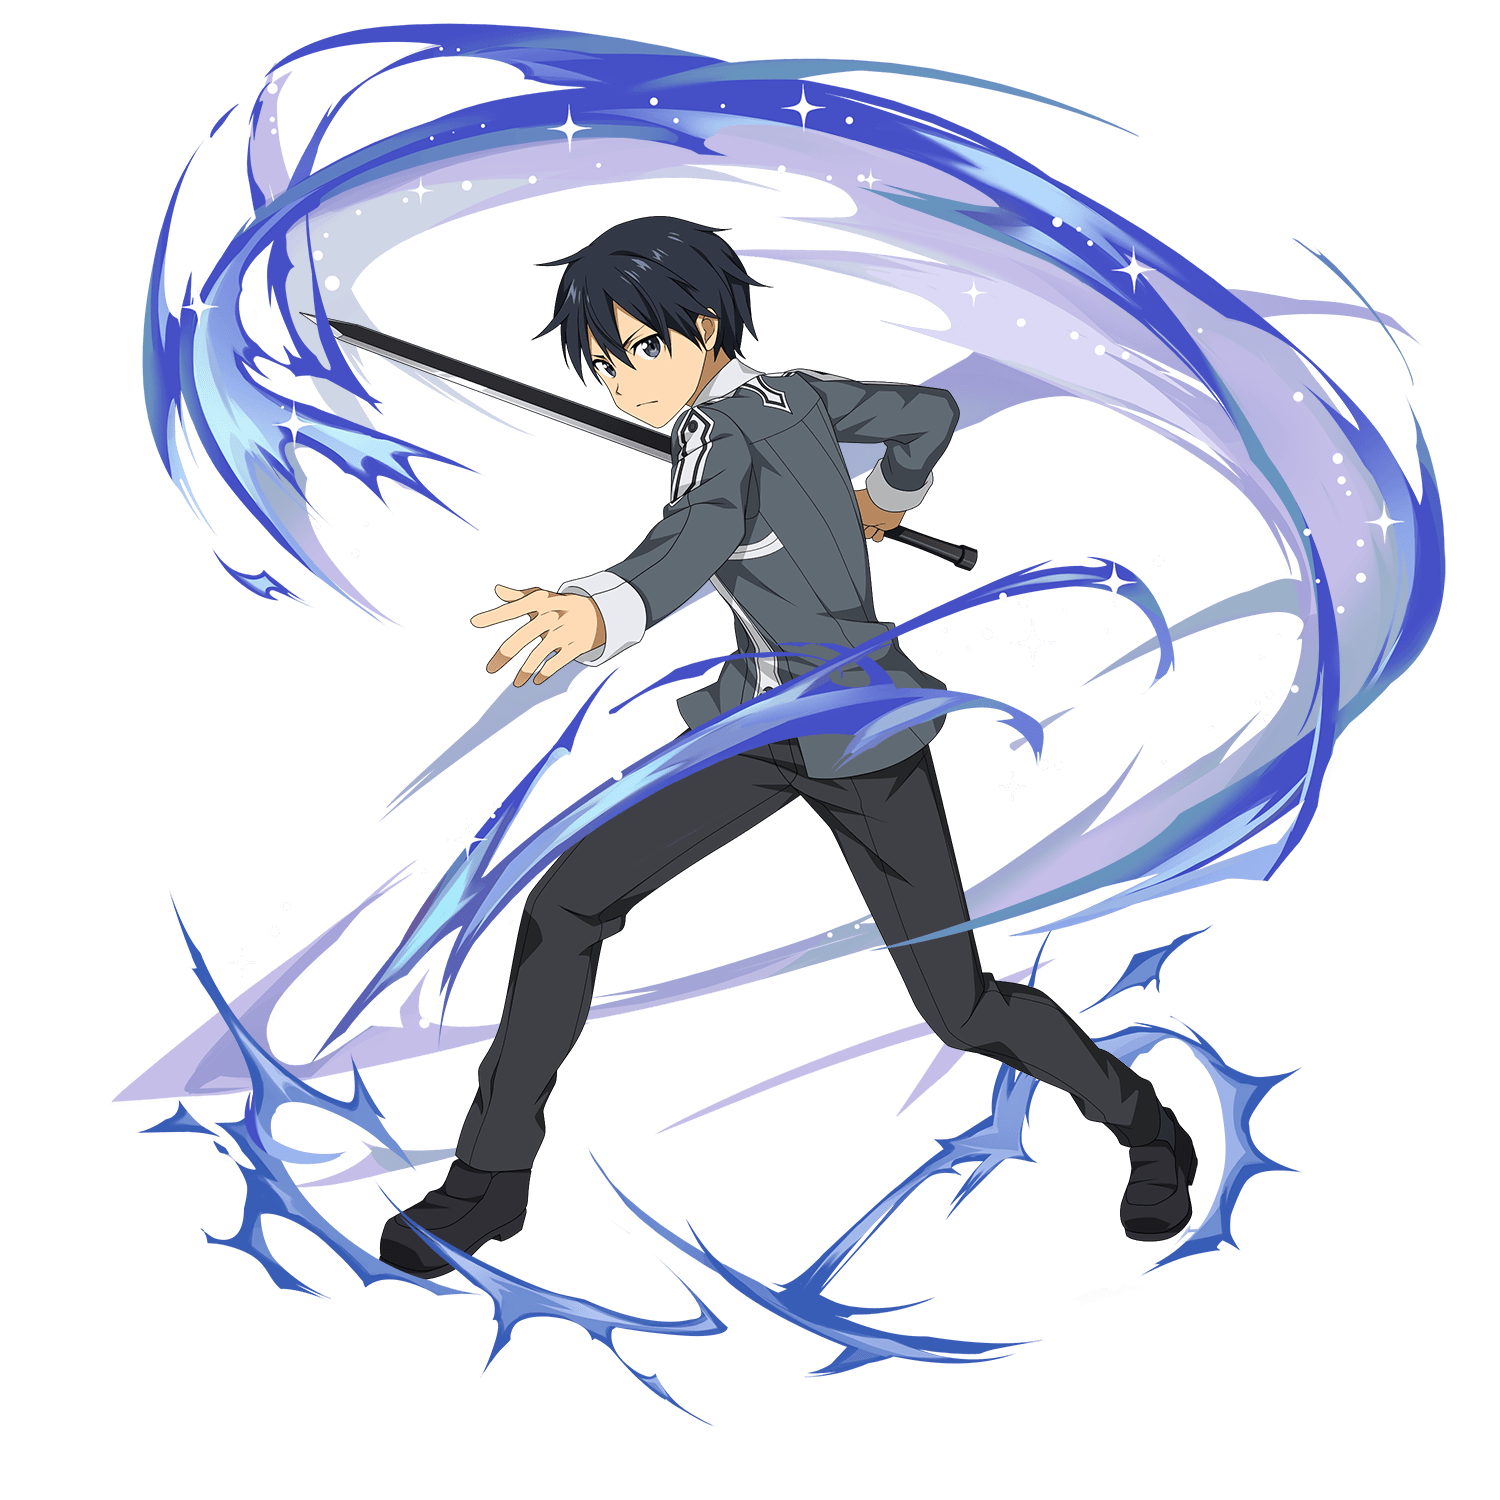 Hình ảnh trong hình dạng của Kirito là một cơn lốc màu xanh tím